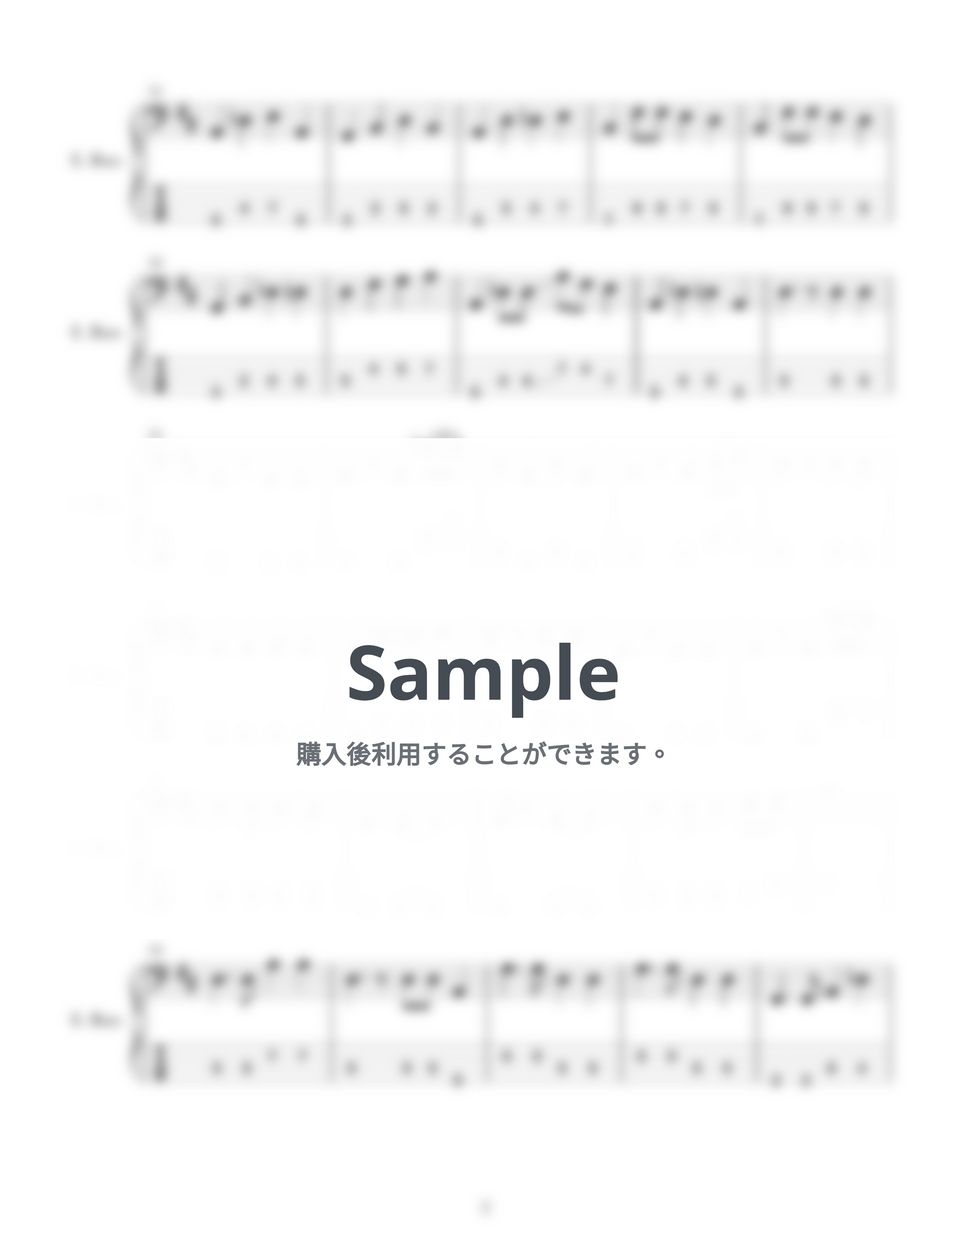 あいみょん - 青春と青春と青春 (４弦ベースTAB譜、PDF6枚) by G's score